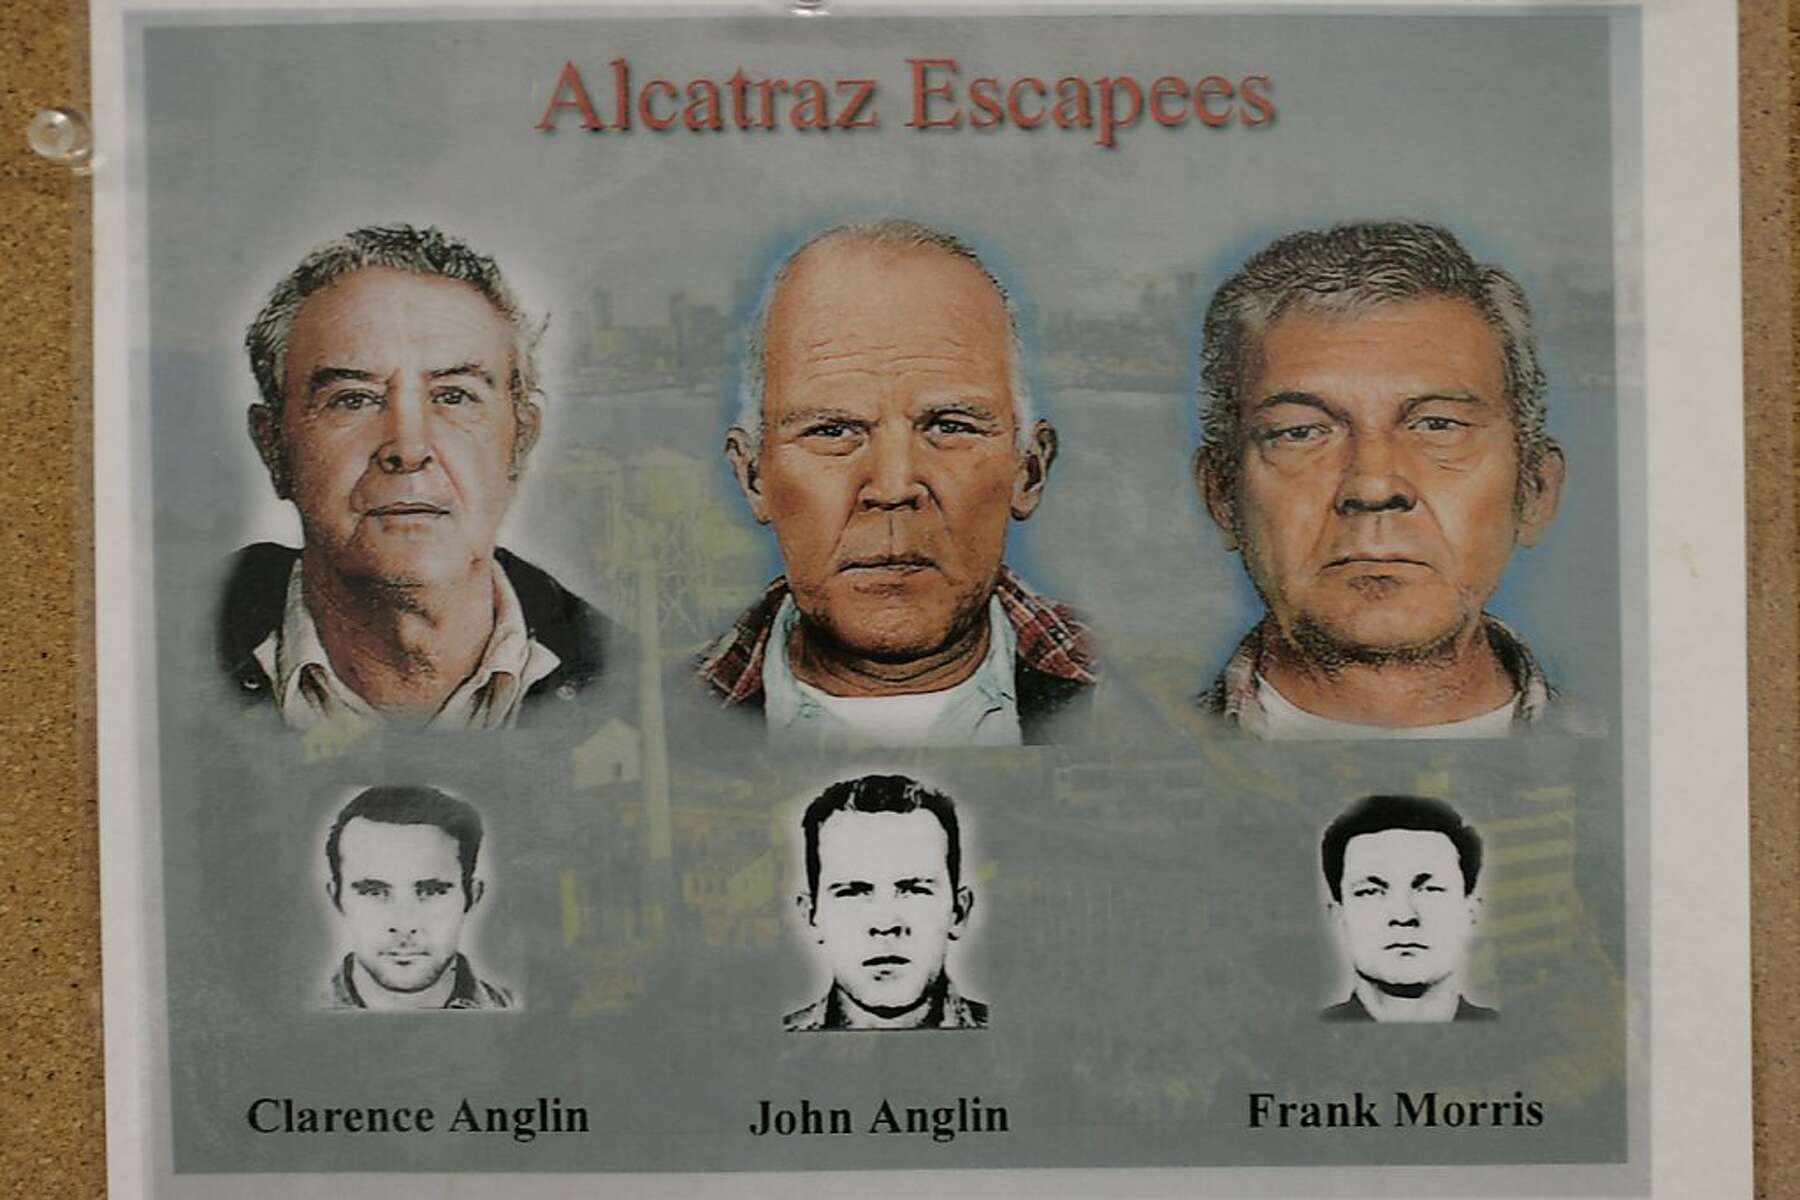 Alcatraz escape nears 50th anniversary